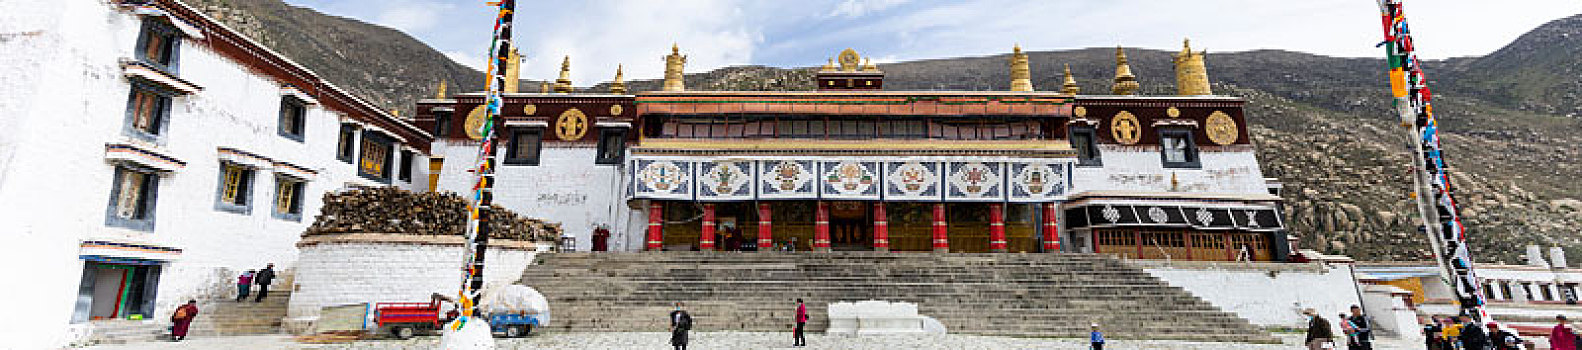 西藏哲蚌寺西藏寺庙